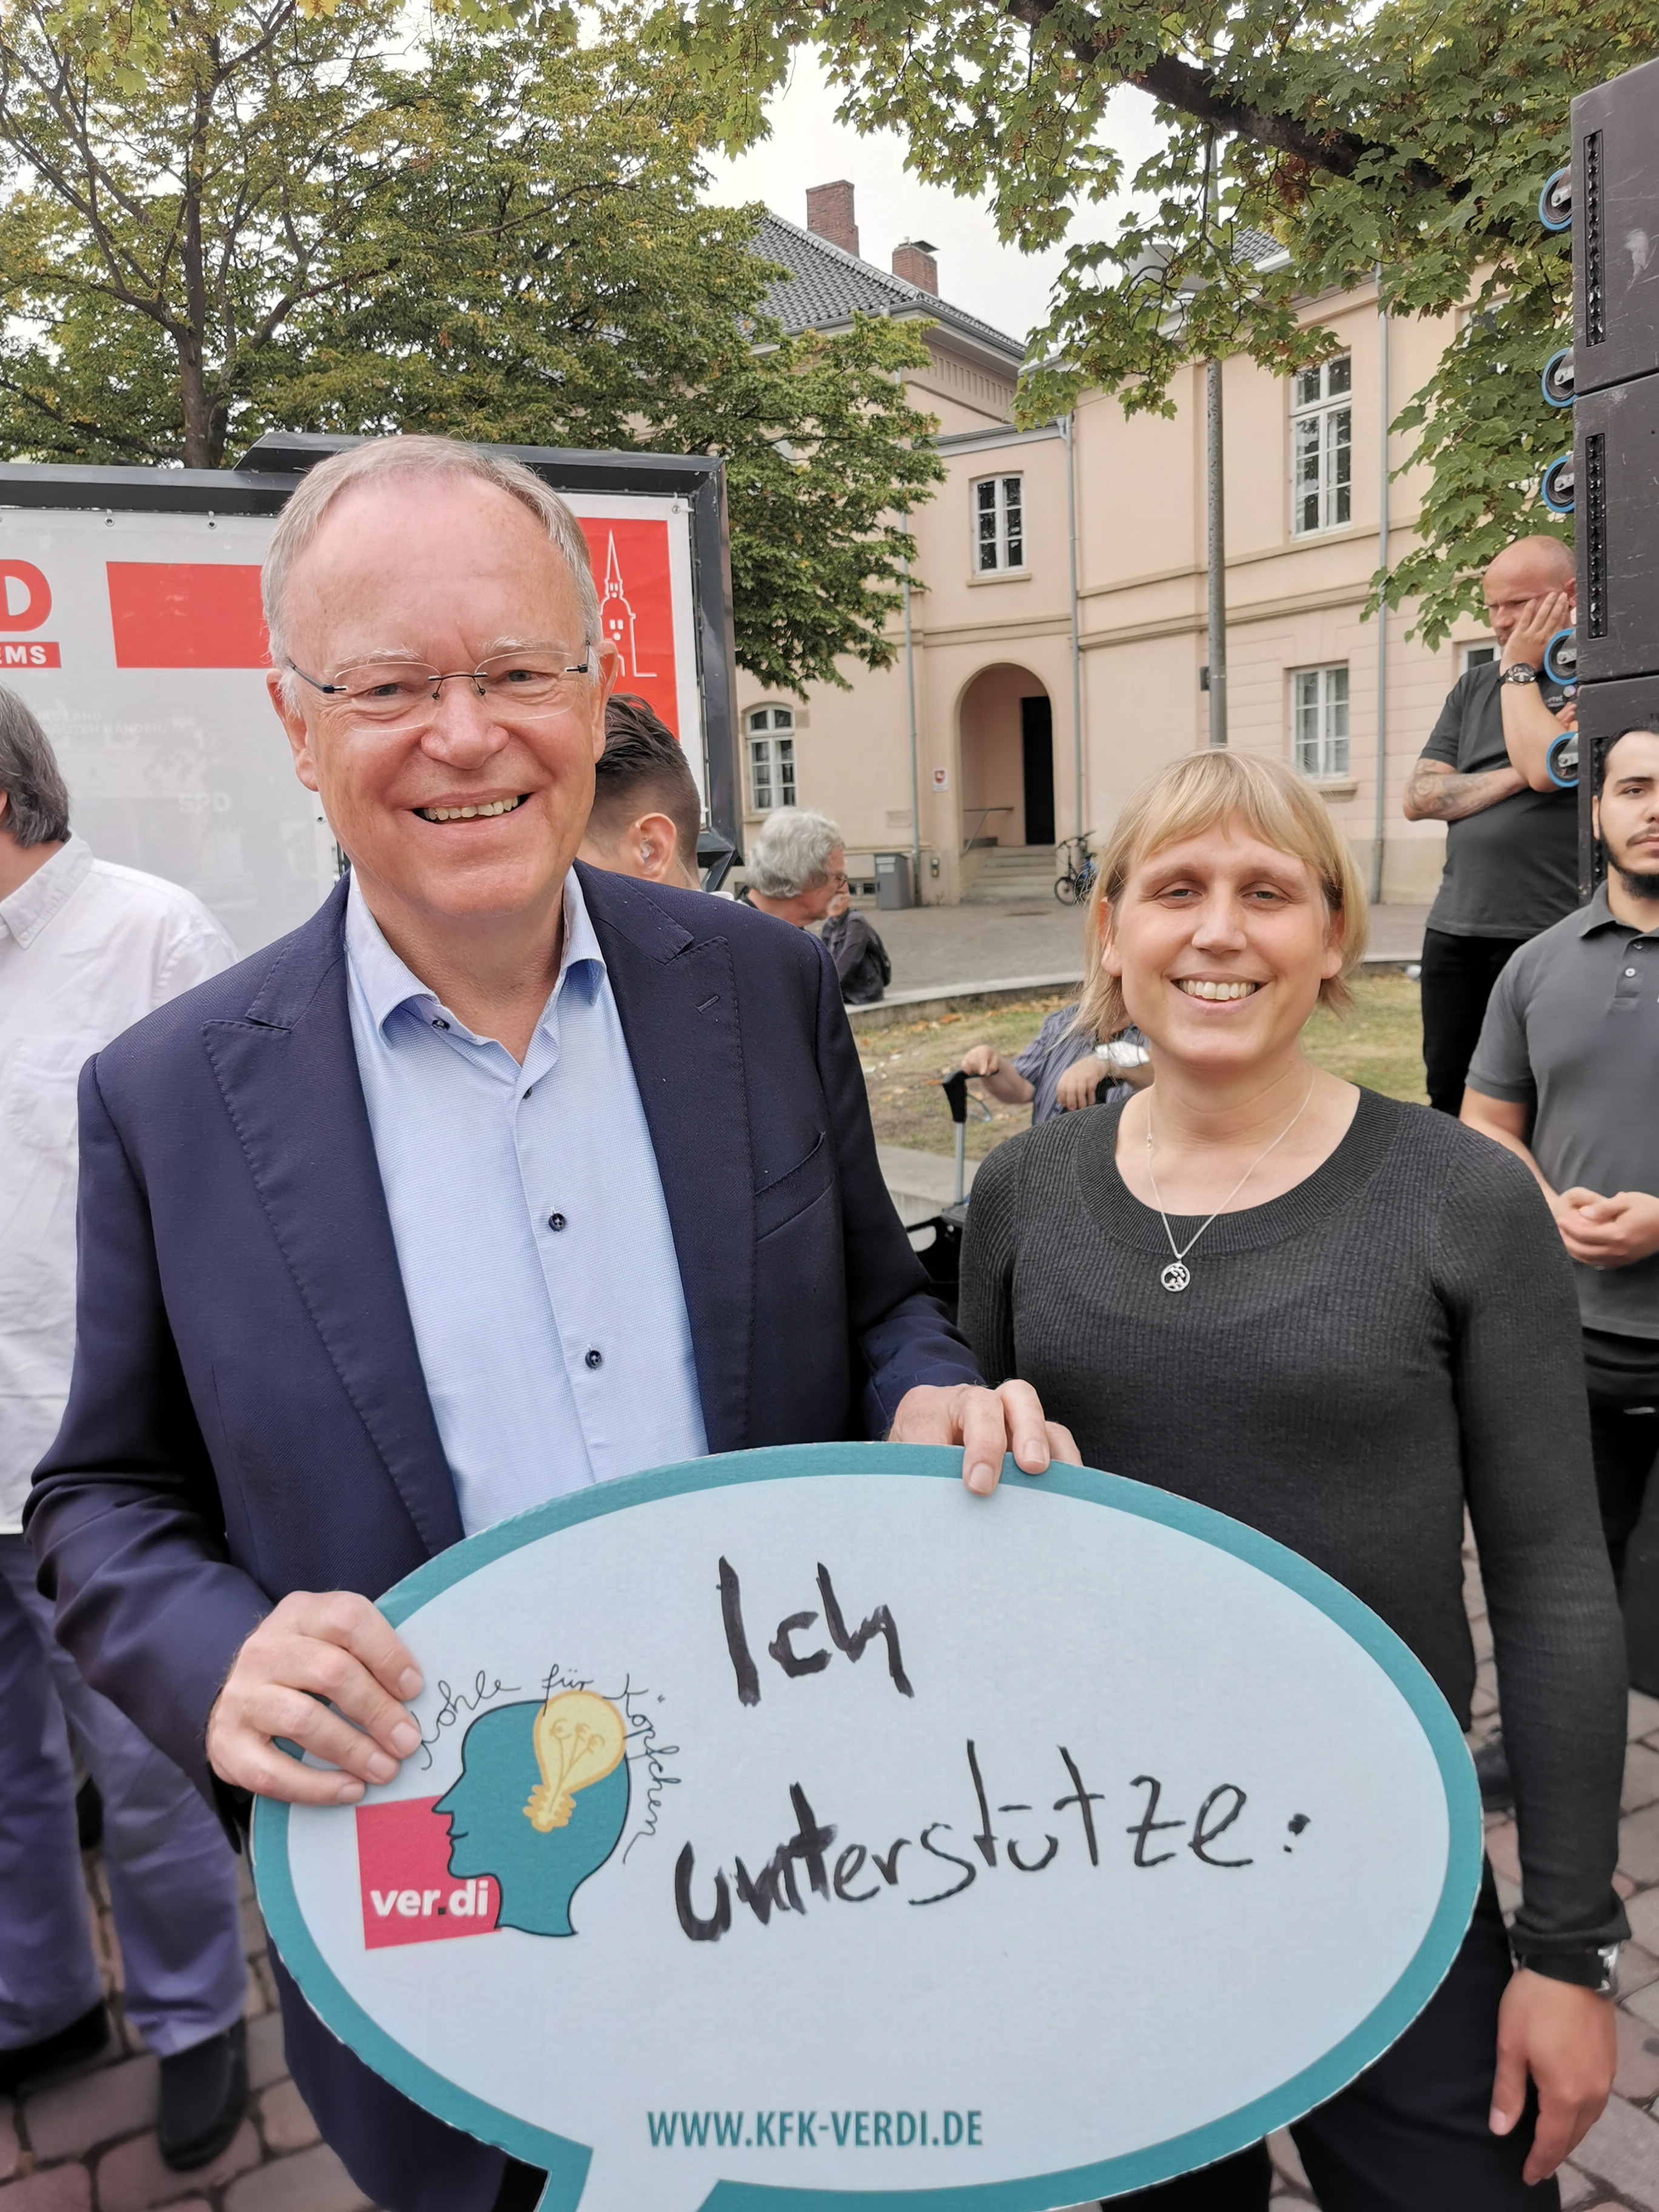 Stephan Weil, Ministerpräsident und Spitzenkandidat der SPD unterstützt unsere Forderungen ...